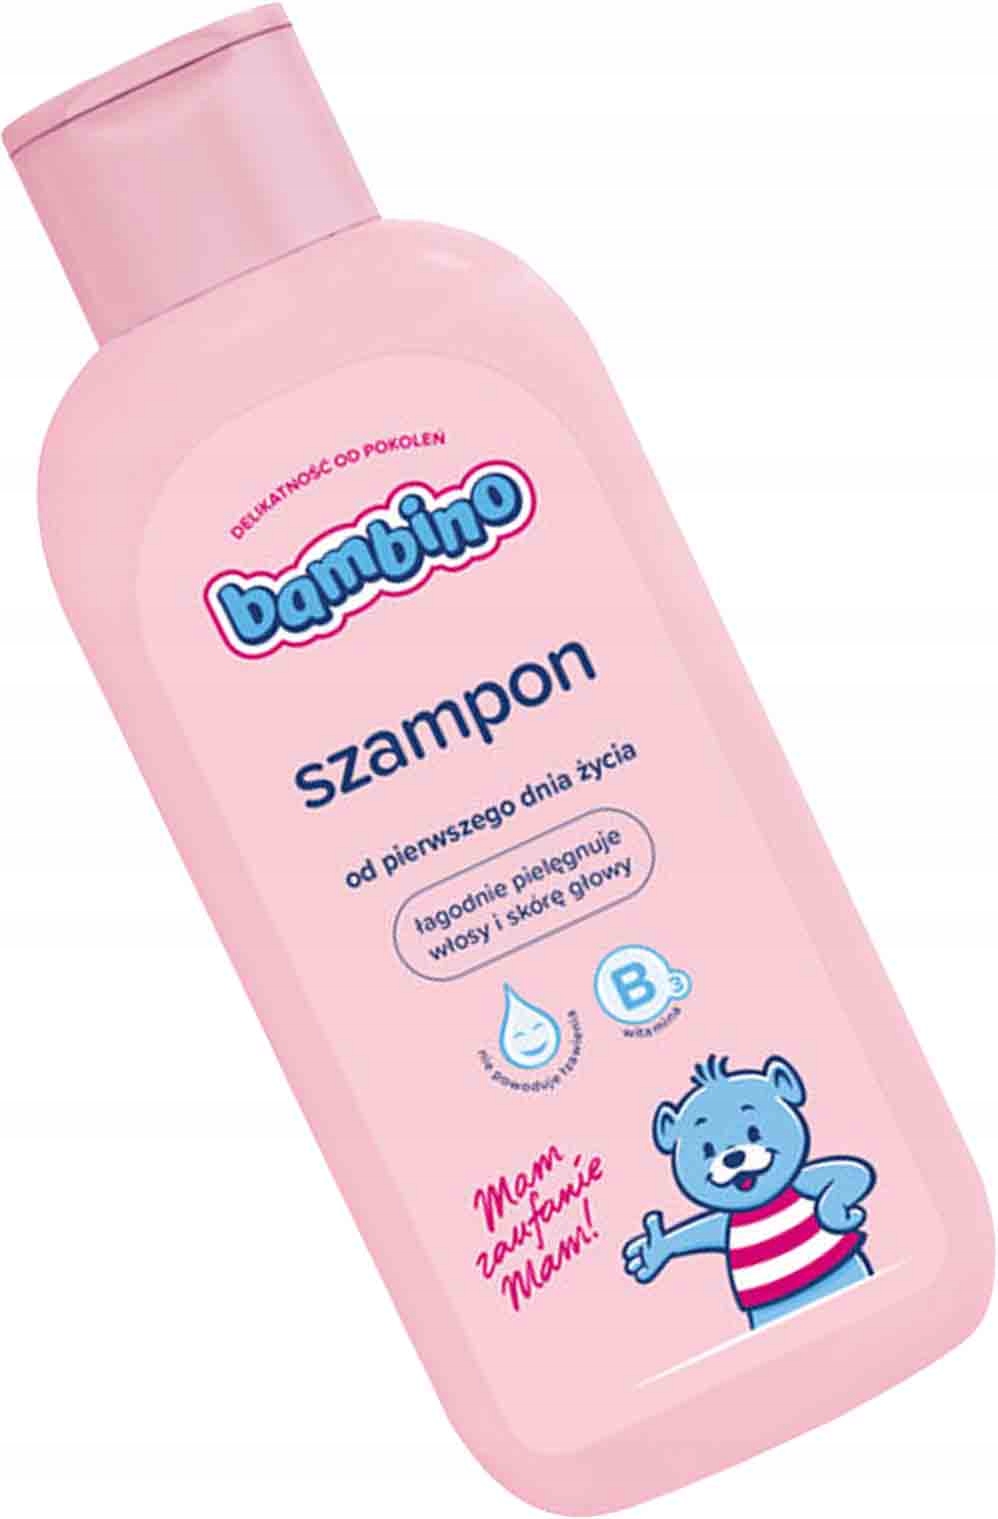 szampon dla półtorarocznego dziecka